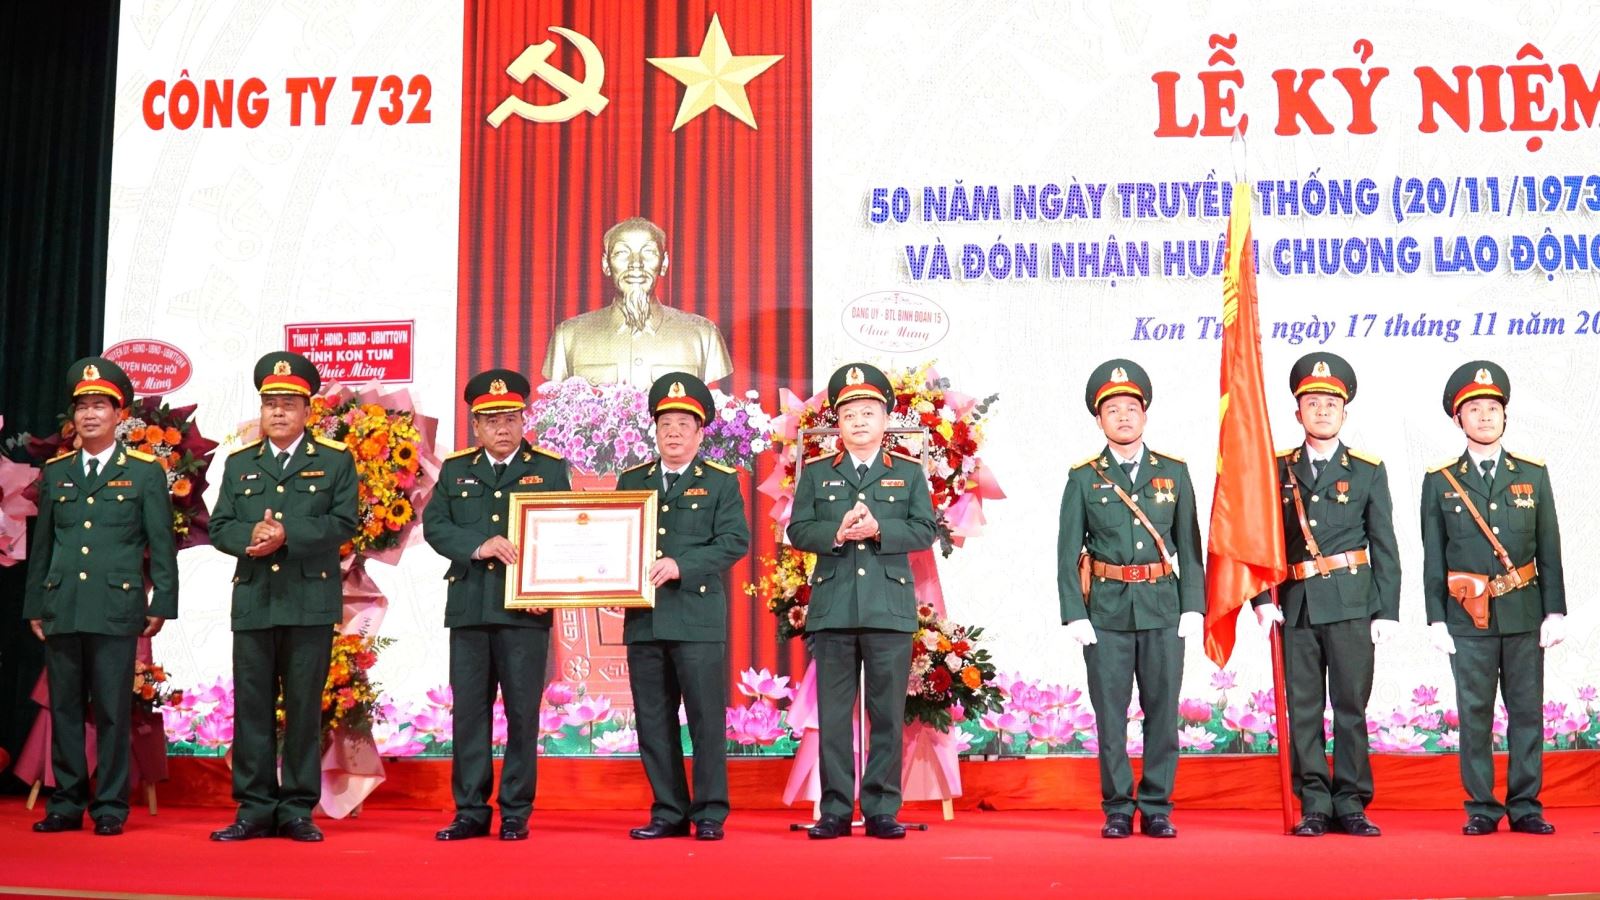 Công ty 732 (Binh đoàn 15) kỷ niệm 50 năm Ngày Truyền thống và đón nhận Huân chương Lao động hạng Nhì